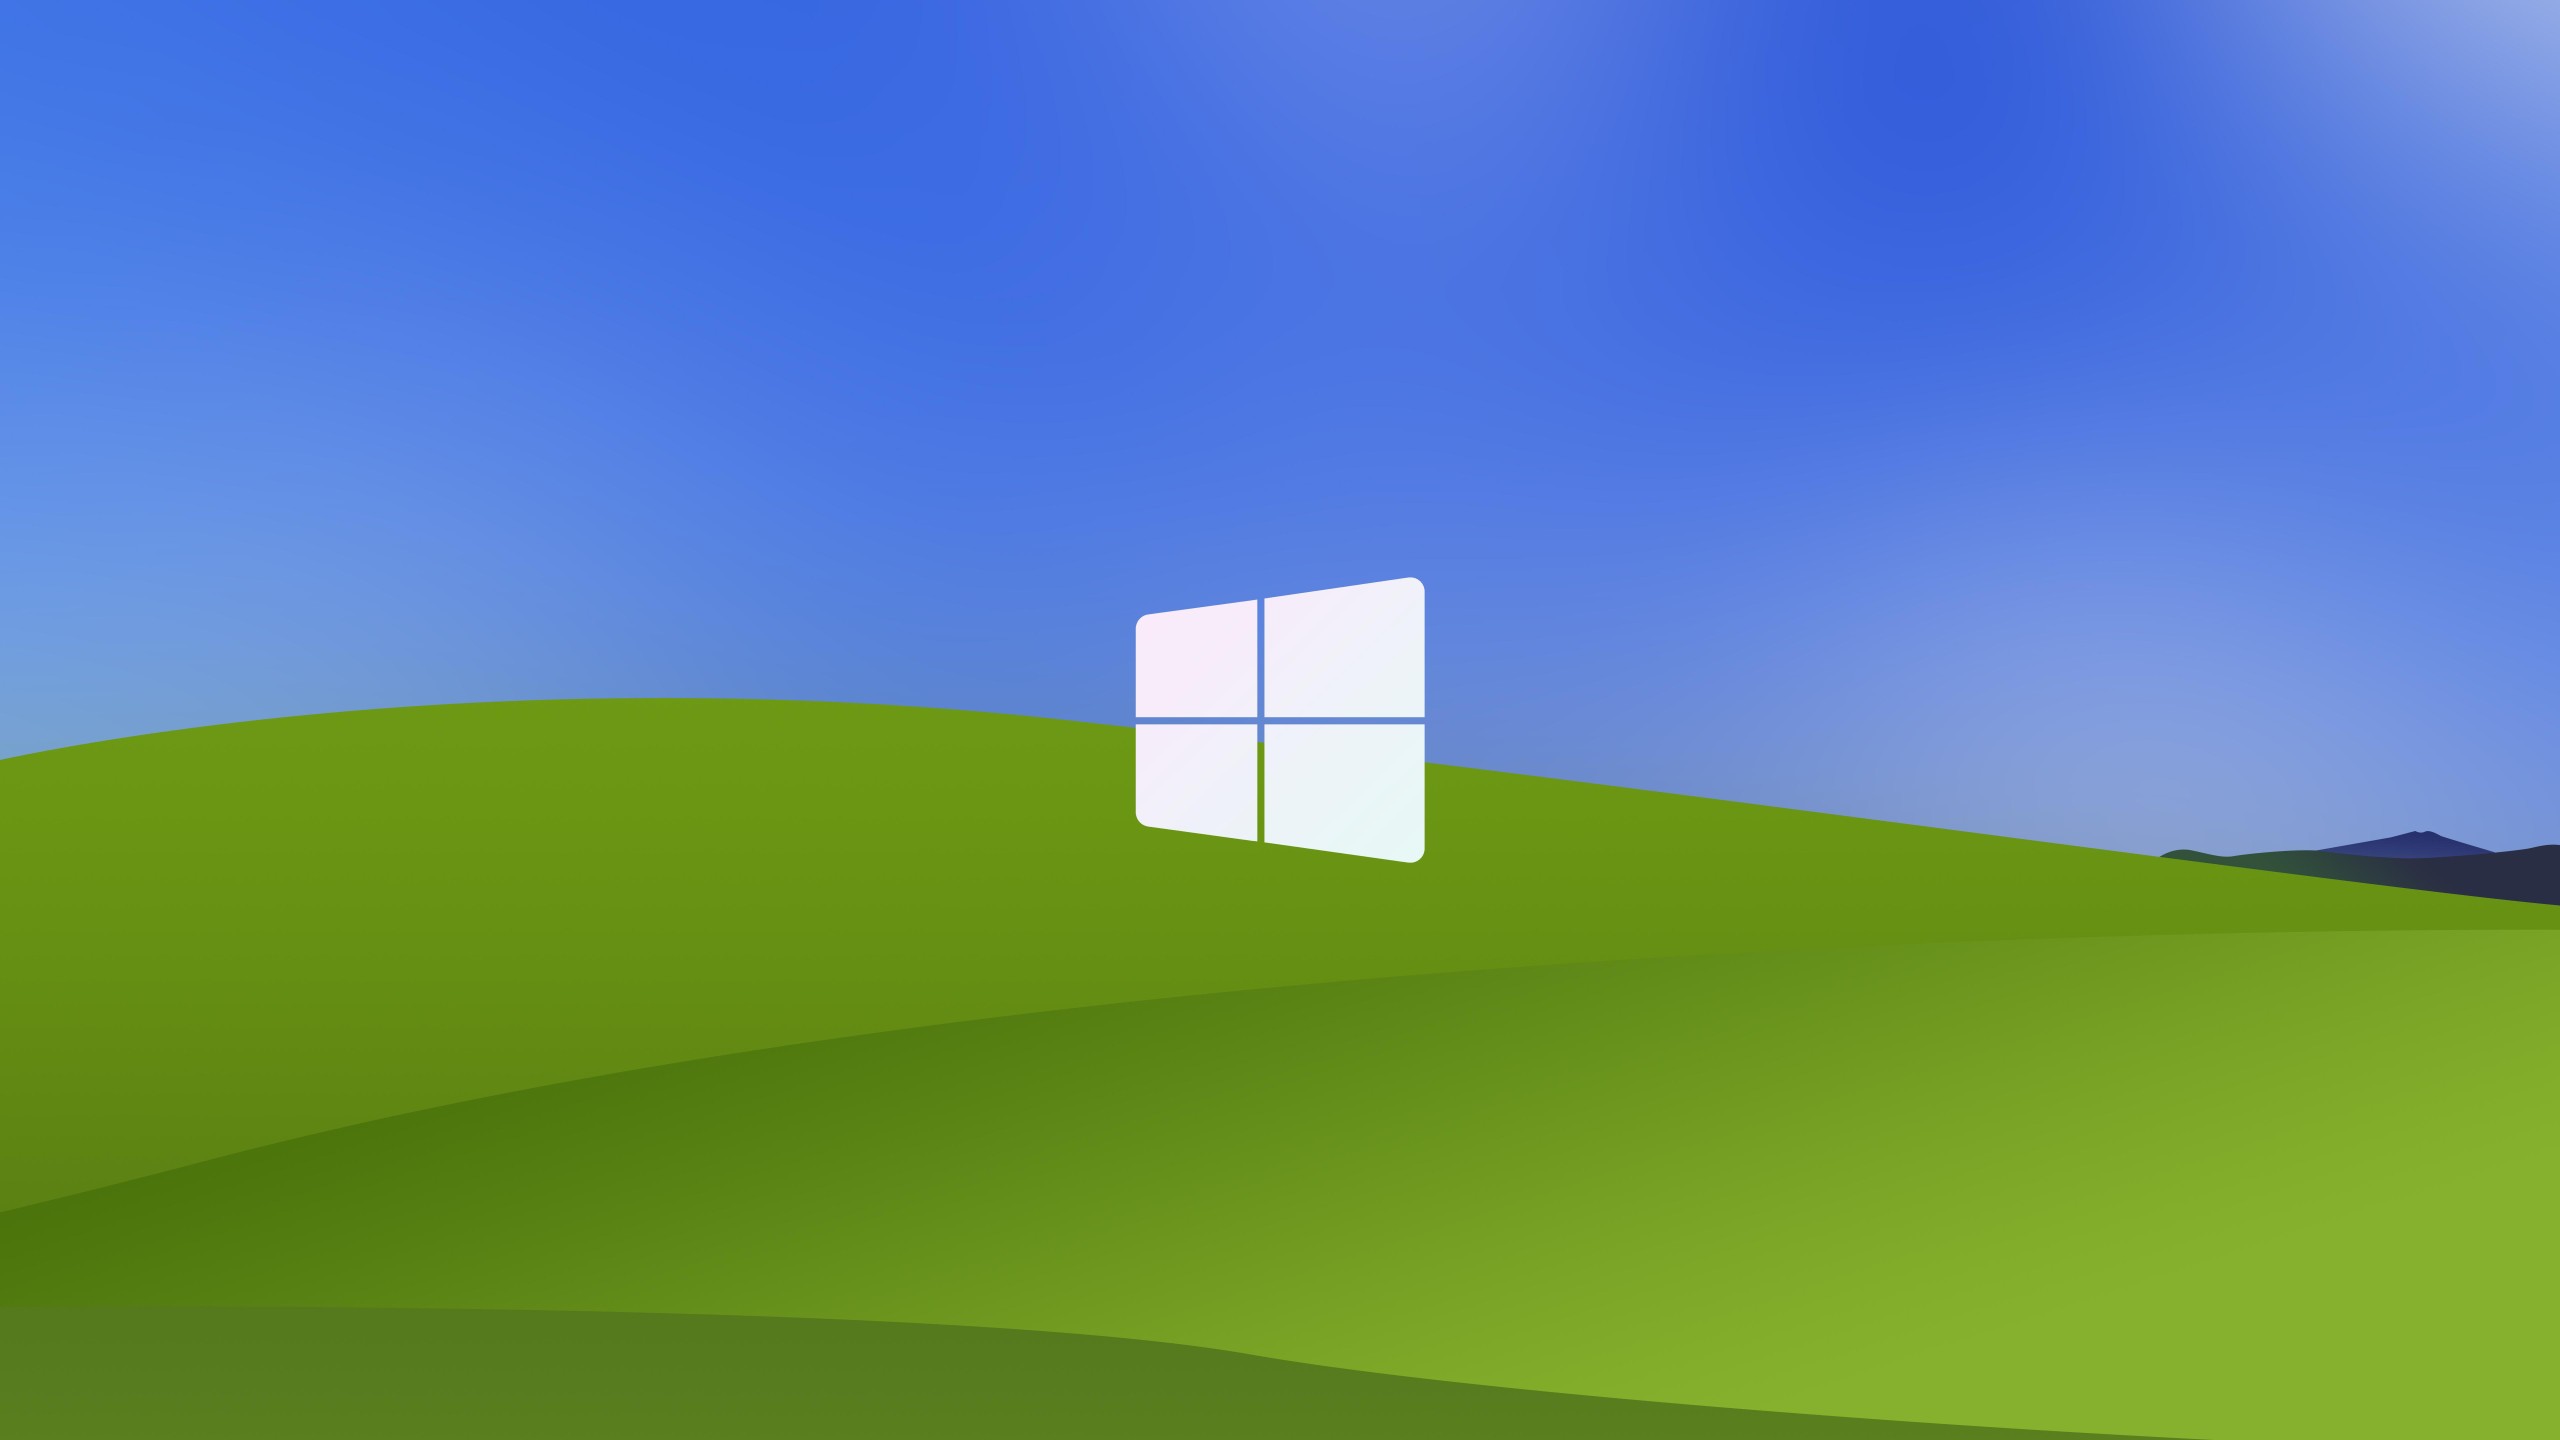 Hình nền Windows XP 8k sẽ đưa bạn trở lại ký ức tuổi thơ và cảm nhận được sự hoài niệm trong tiềm thức. Hãy xem ngay hình ảnh liên quan để trải nghiệm lại những kỷ niệm đó với độ phân giải sắc nét nhất.